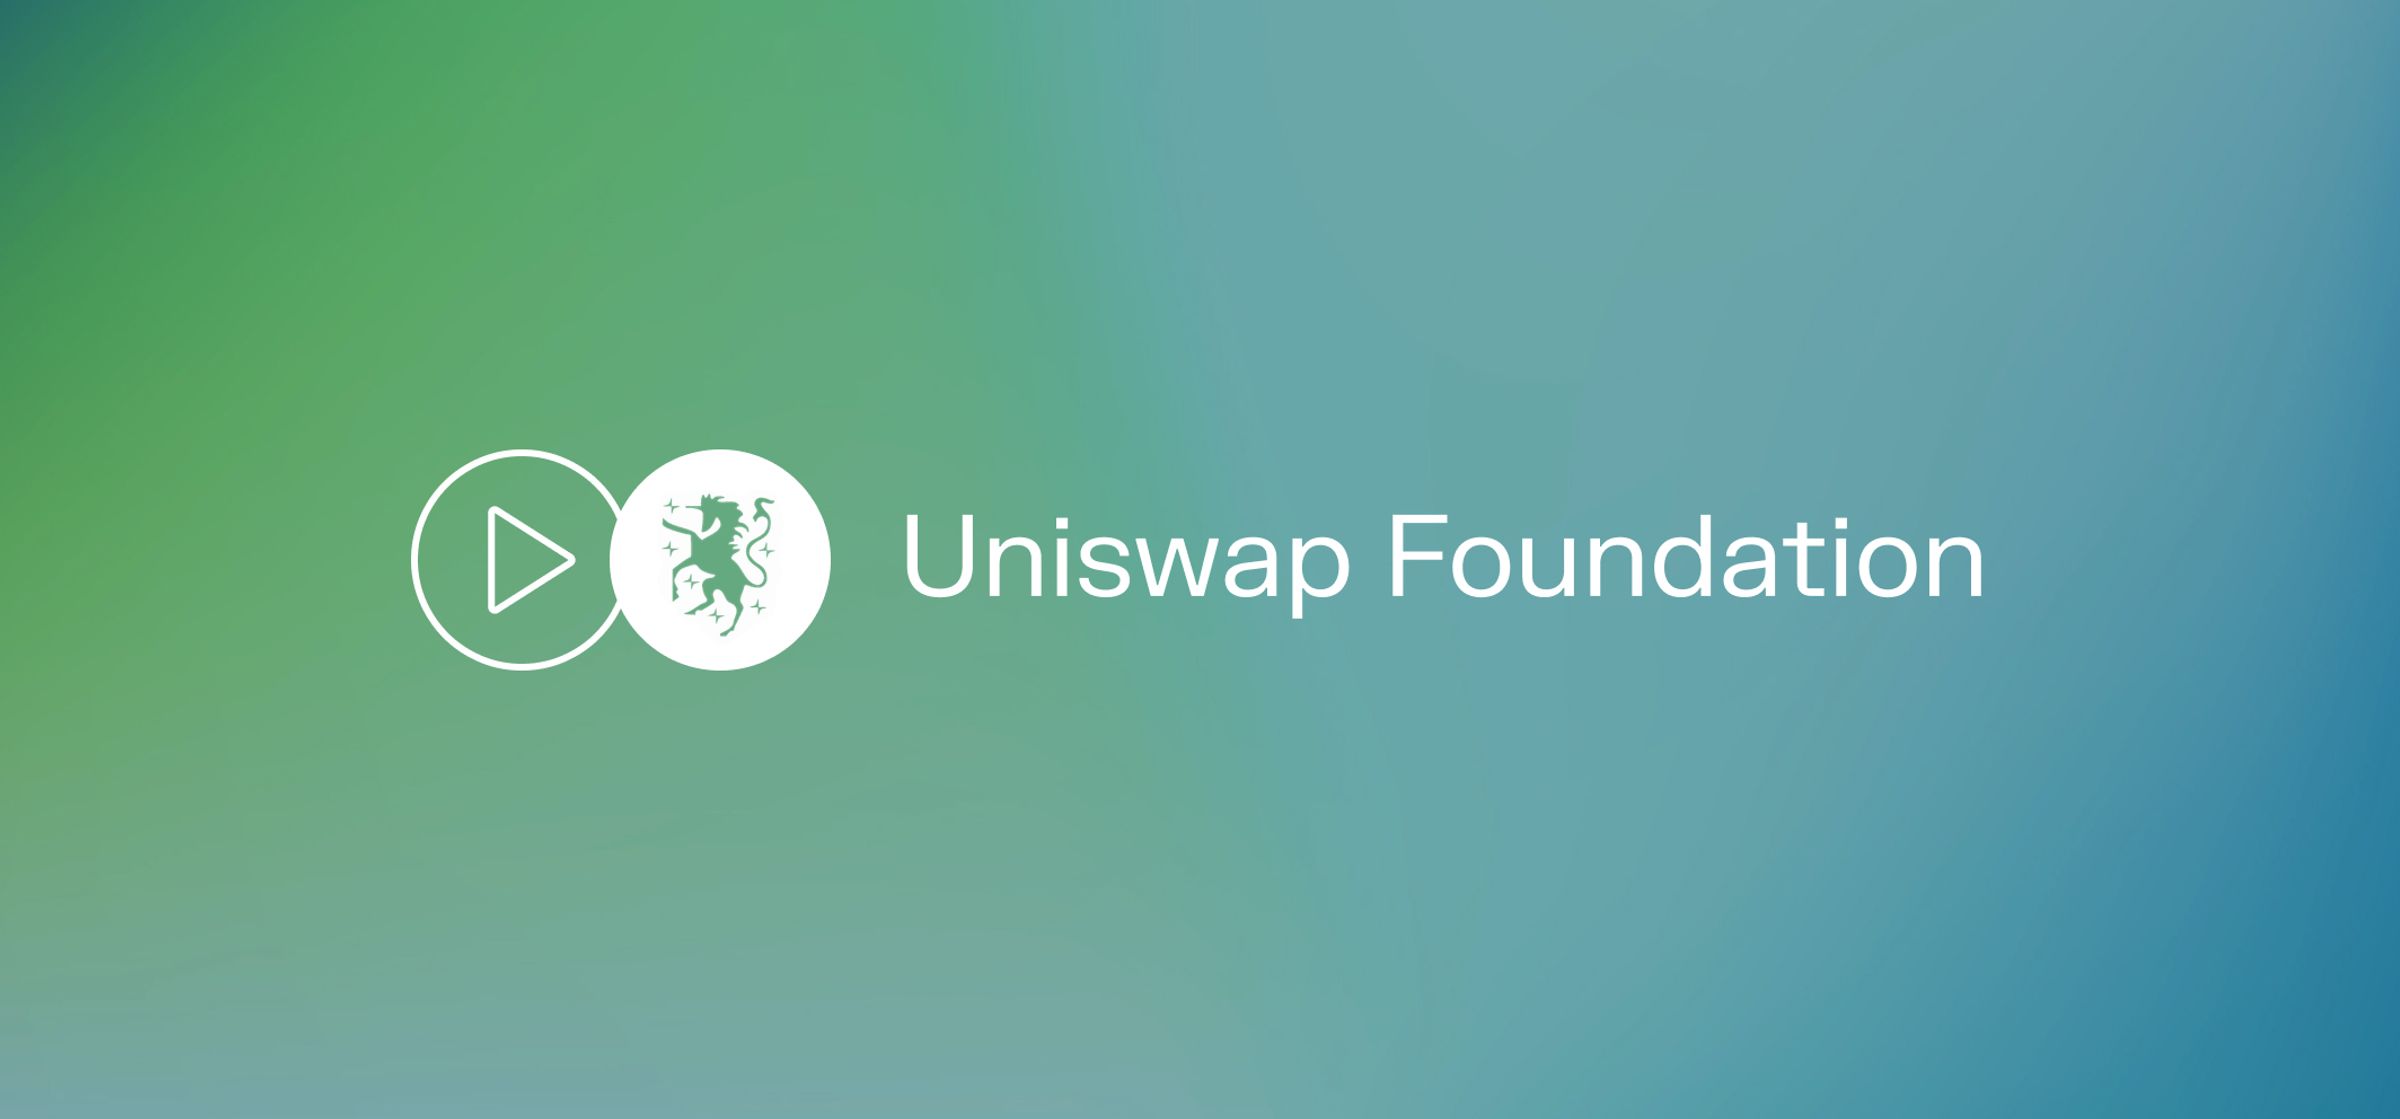 Uniswap Foundation – Innovation, developers, Uniswap v4, decentralization, LPs, & more | Fundamentals ep.82